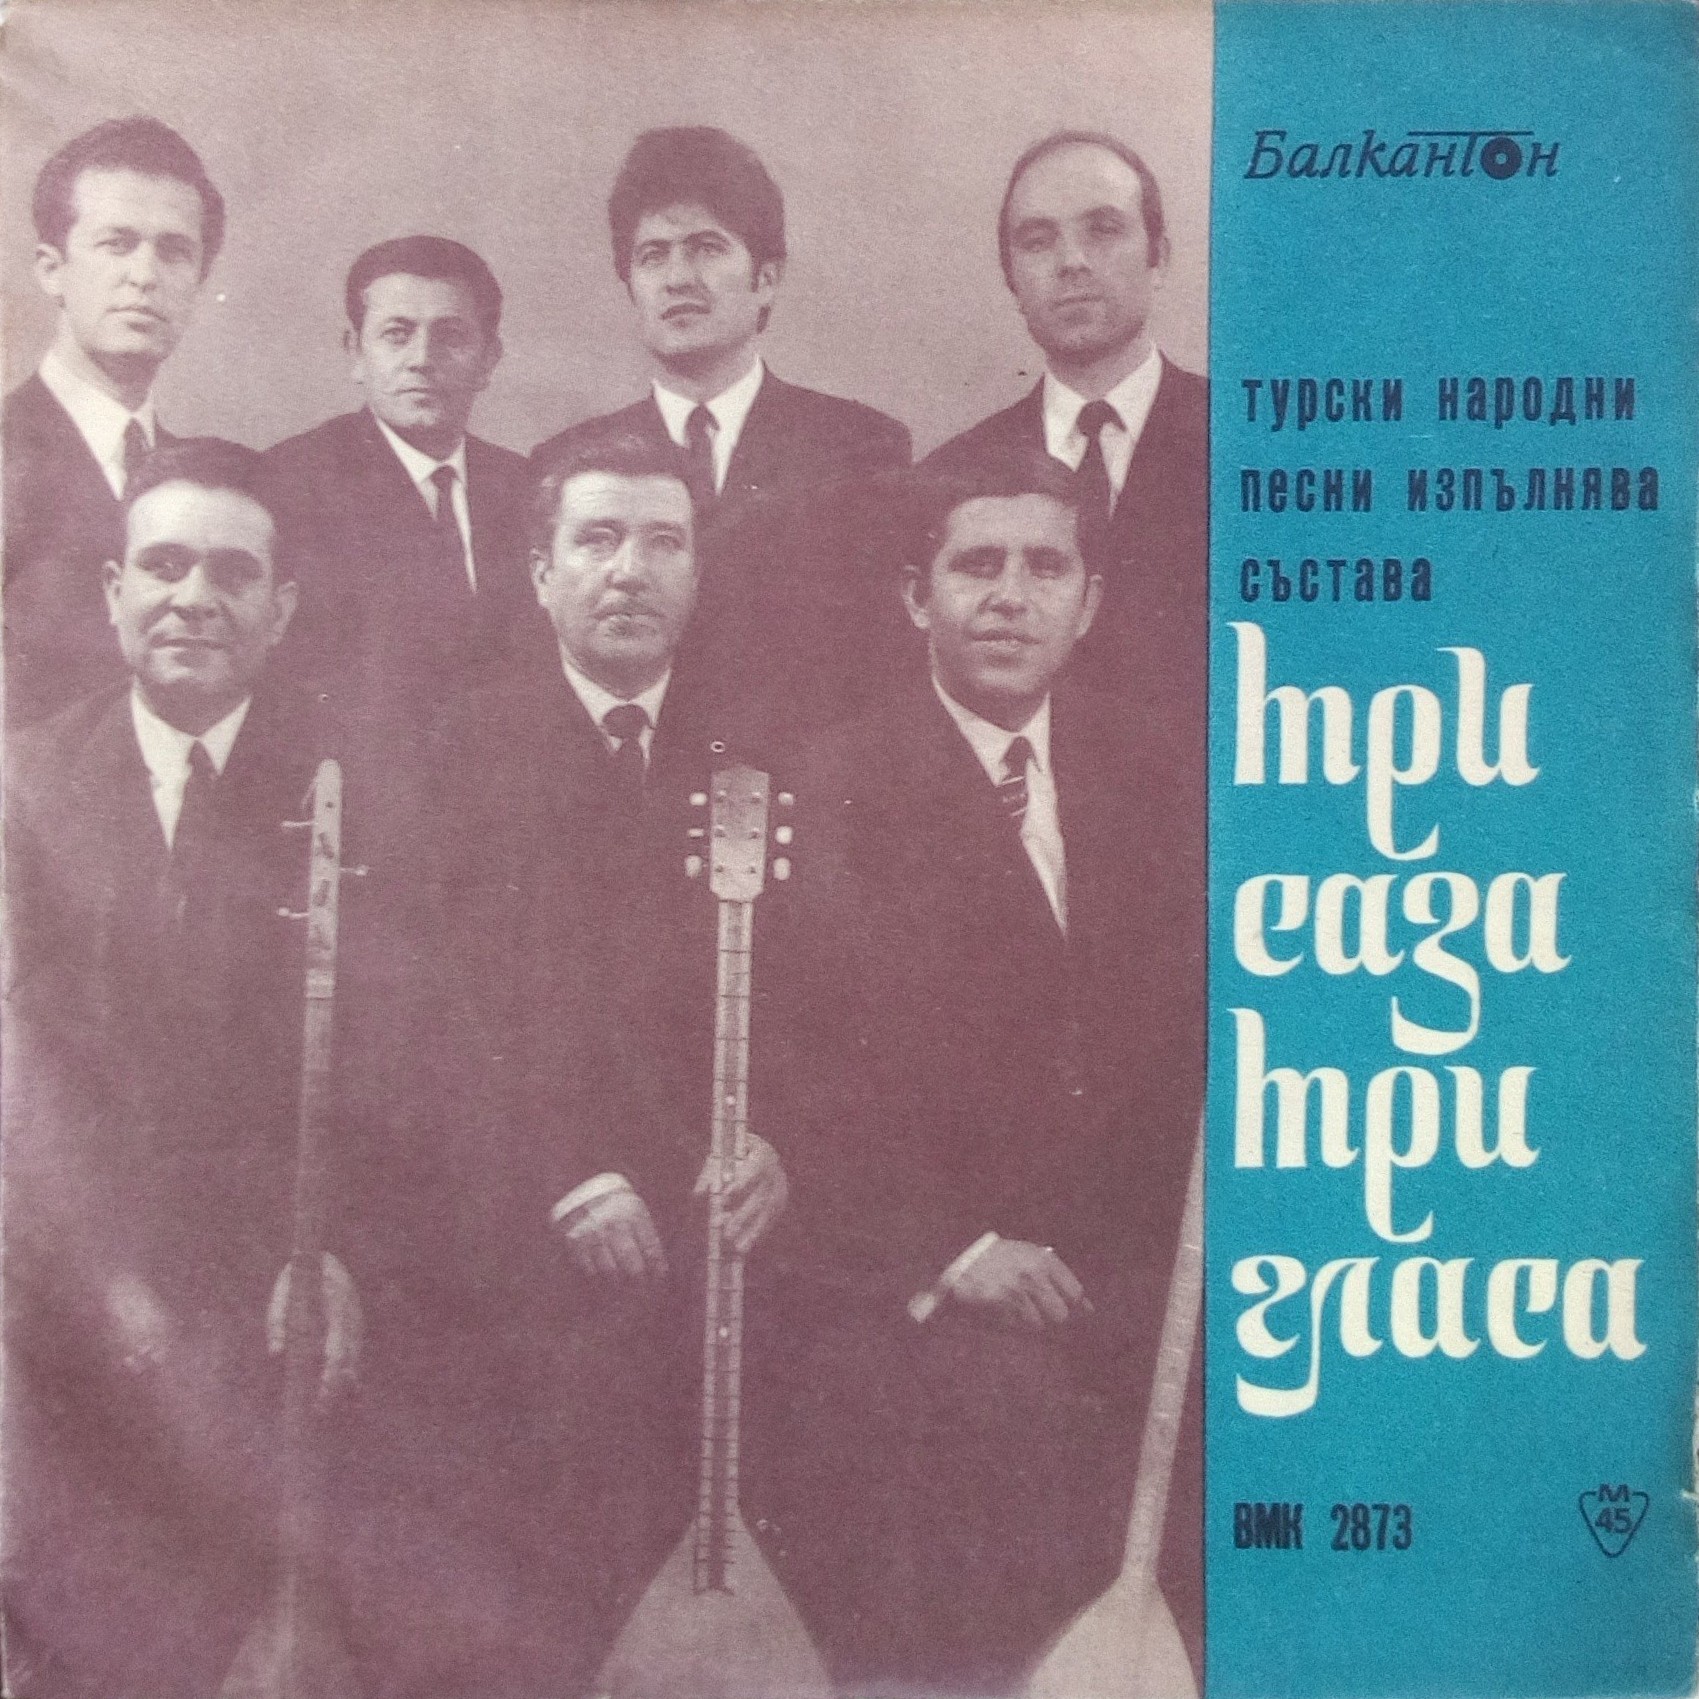 Турски народни песни изпълнява състава "Три саза - три гласа"